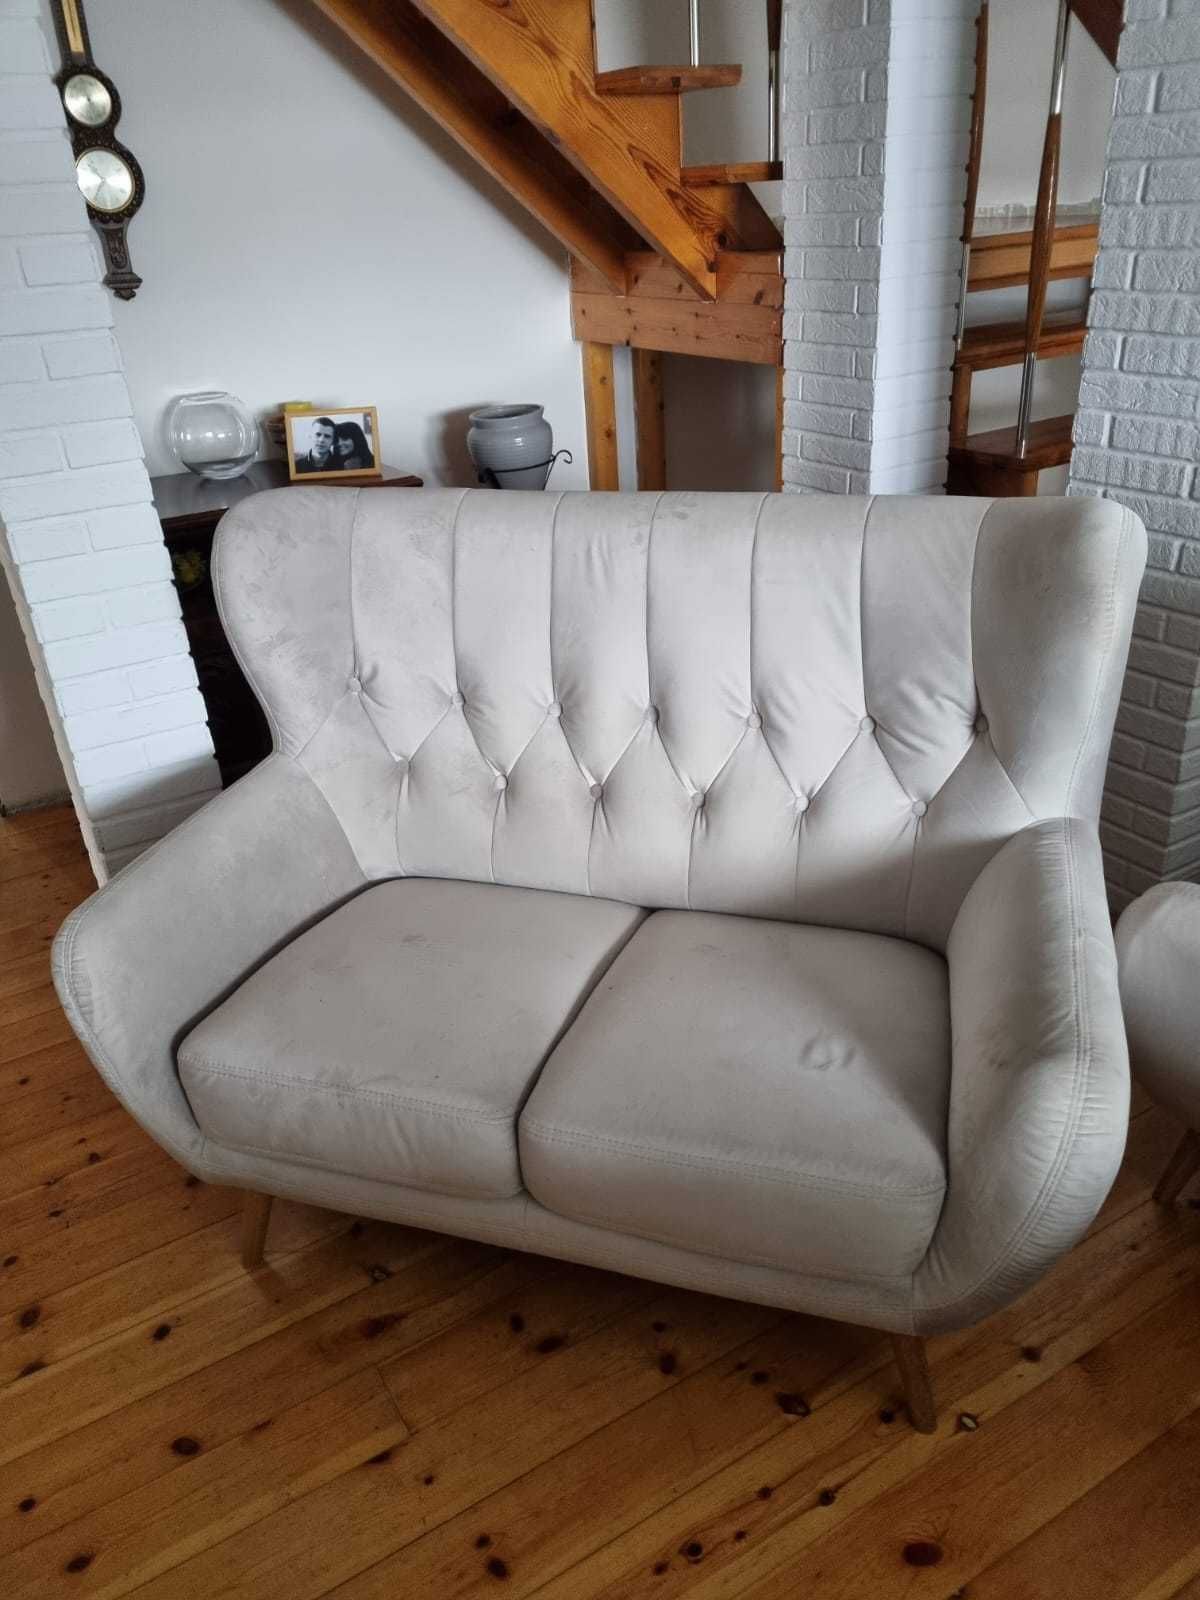 Wypoczynek 3+2 sofa komplet jasny szary 2019r